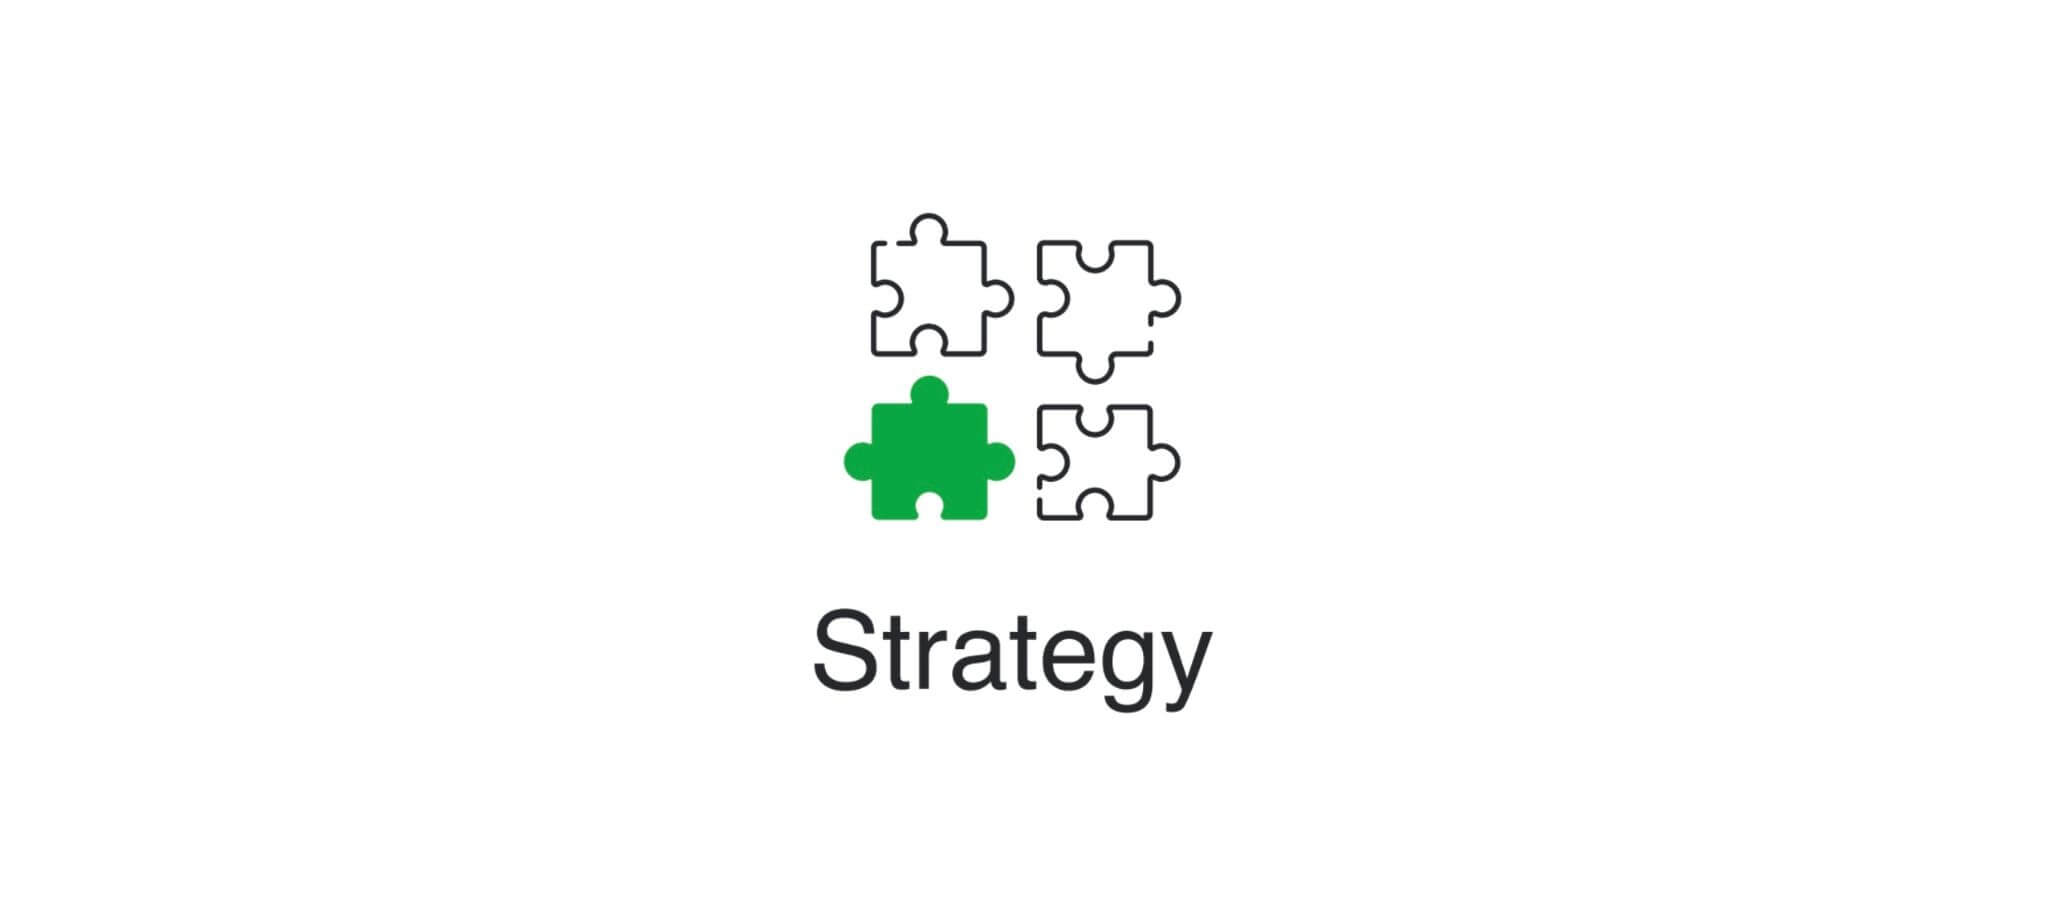 strategy - jigsaw pieces